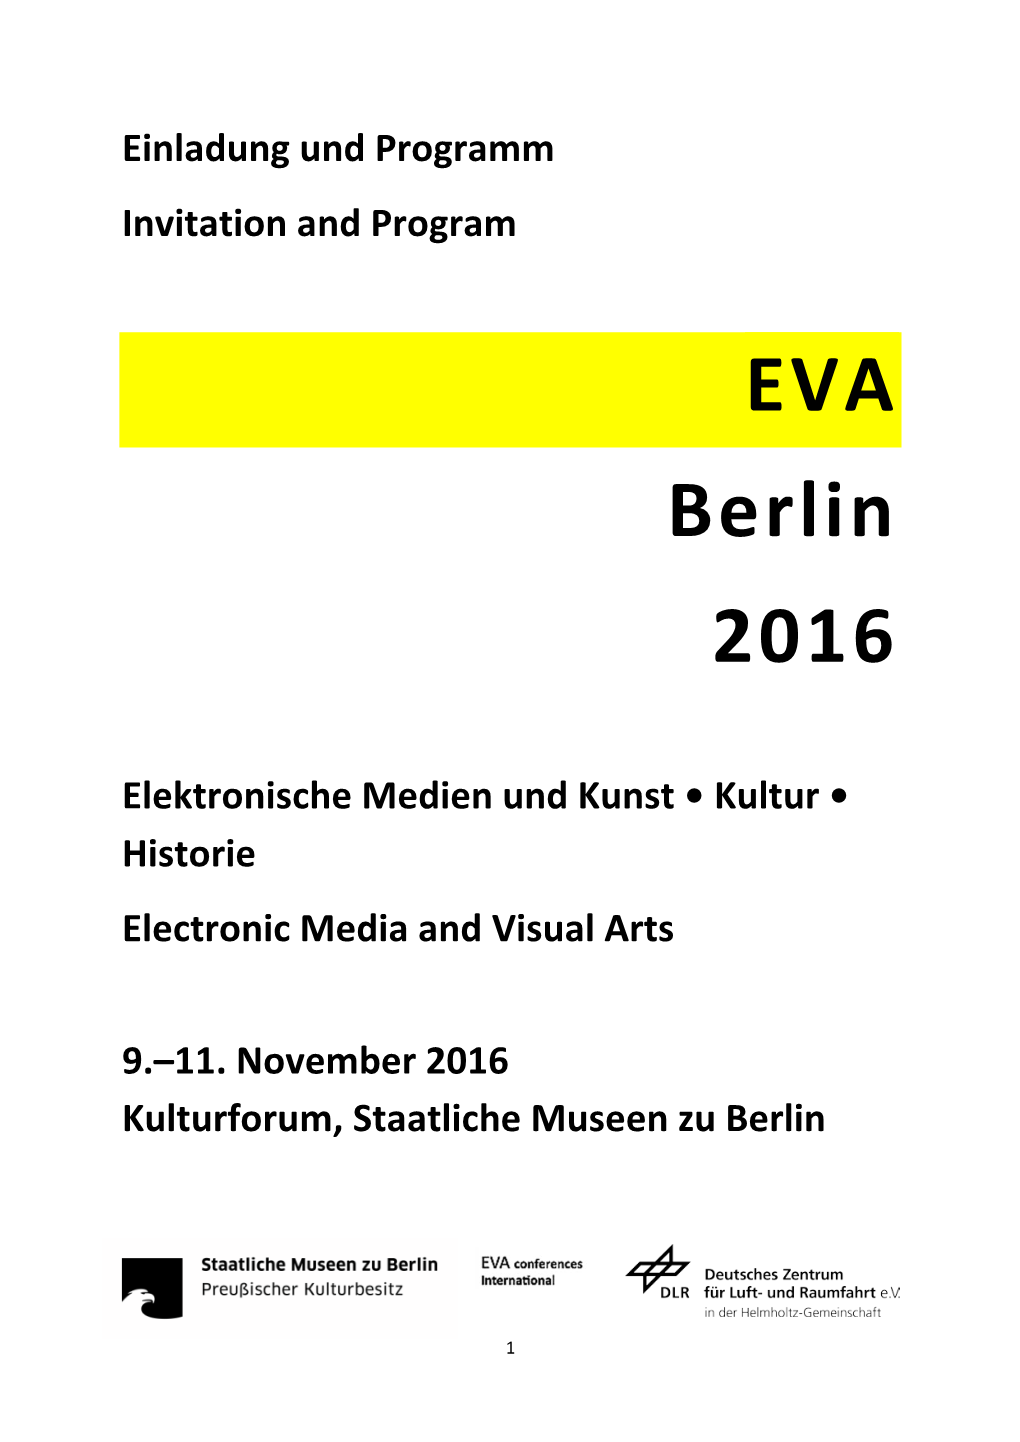 EVA Berlin 2016